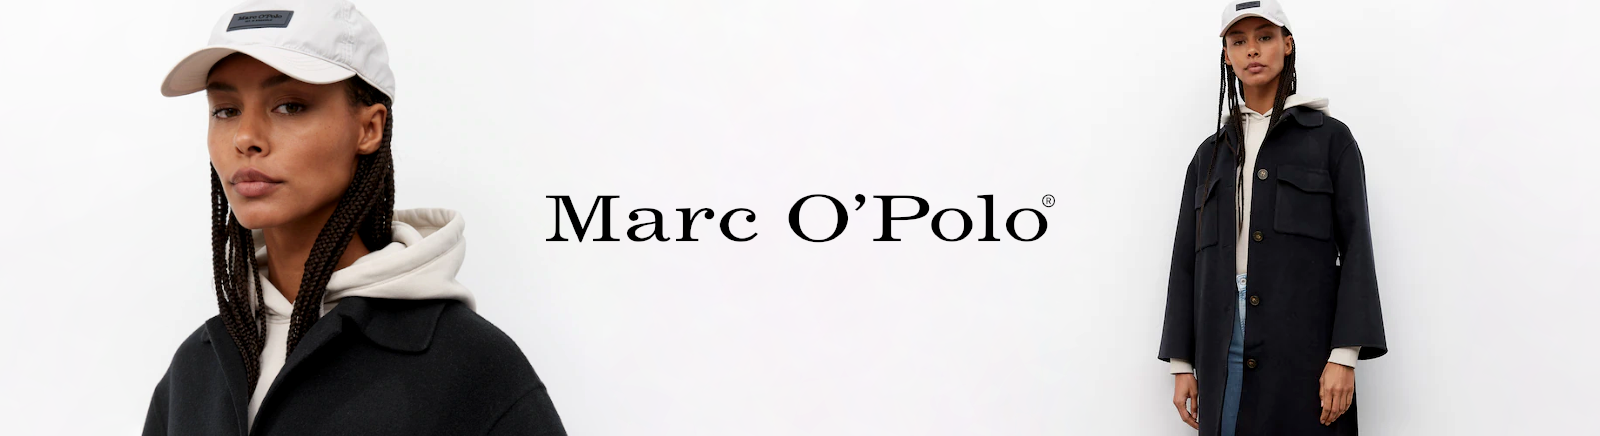 Juppen: Marc O'Polo Langschaftstiefel online shoppen